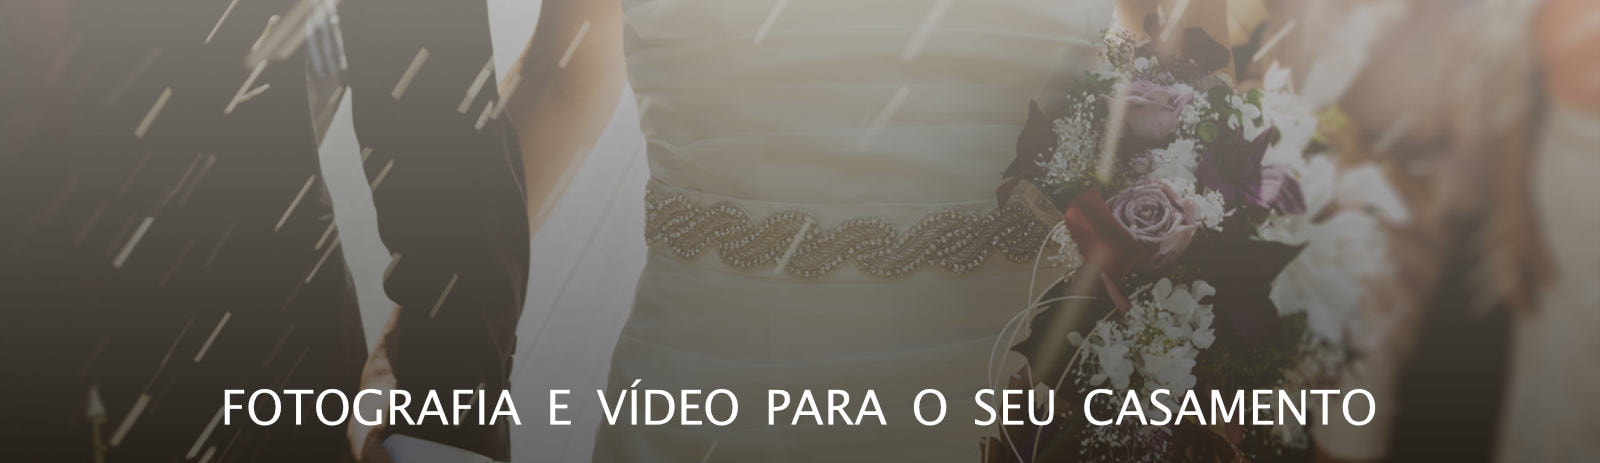 Promoção de foto e filmagem para casamento em Minas Gerais